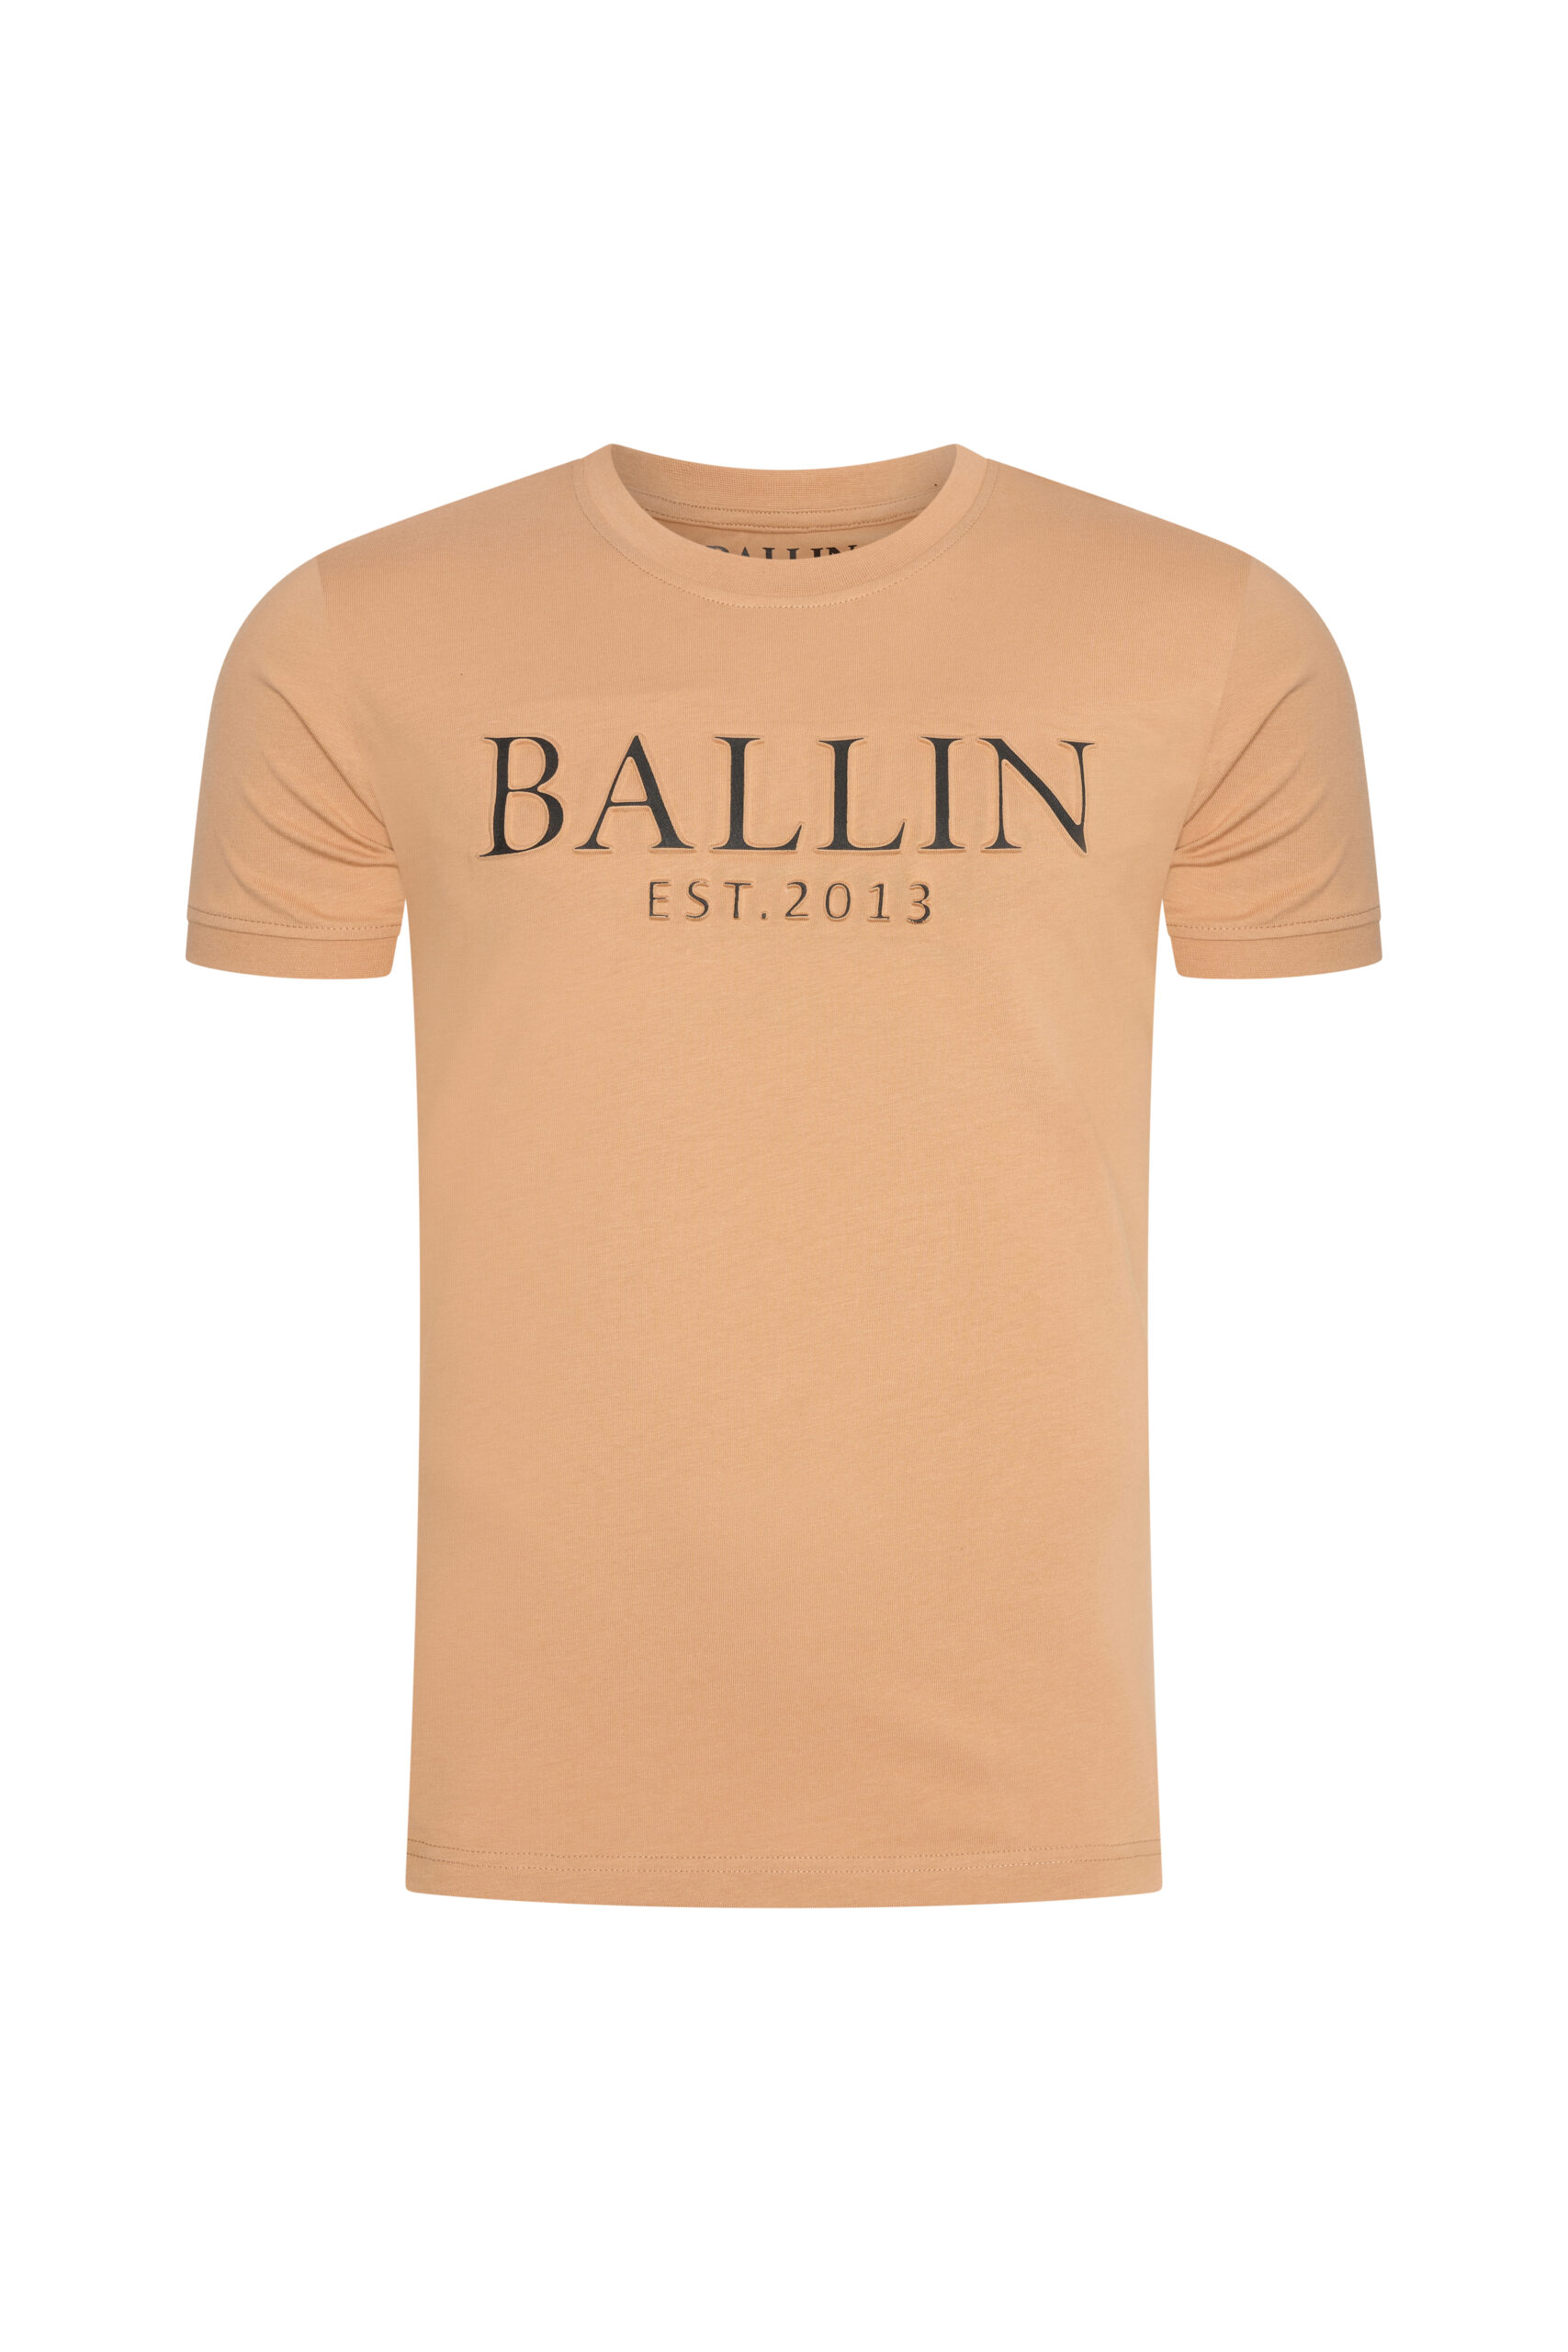 Afbeelding van Ballin Est. 2013 heren t-shirt – 2210